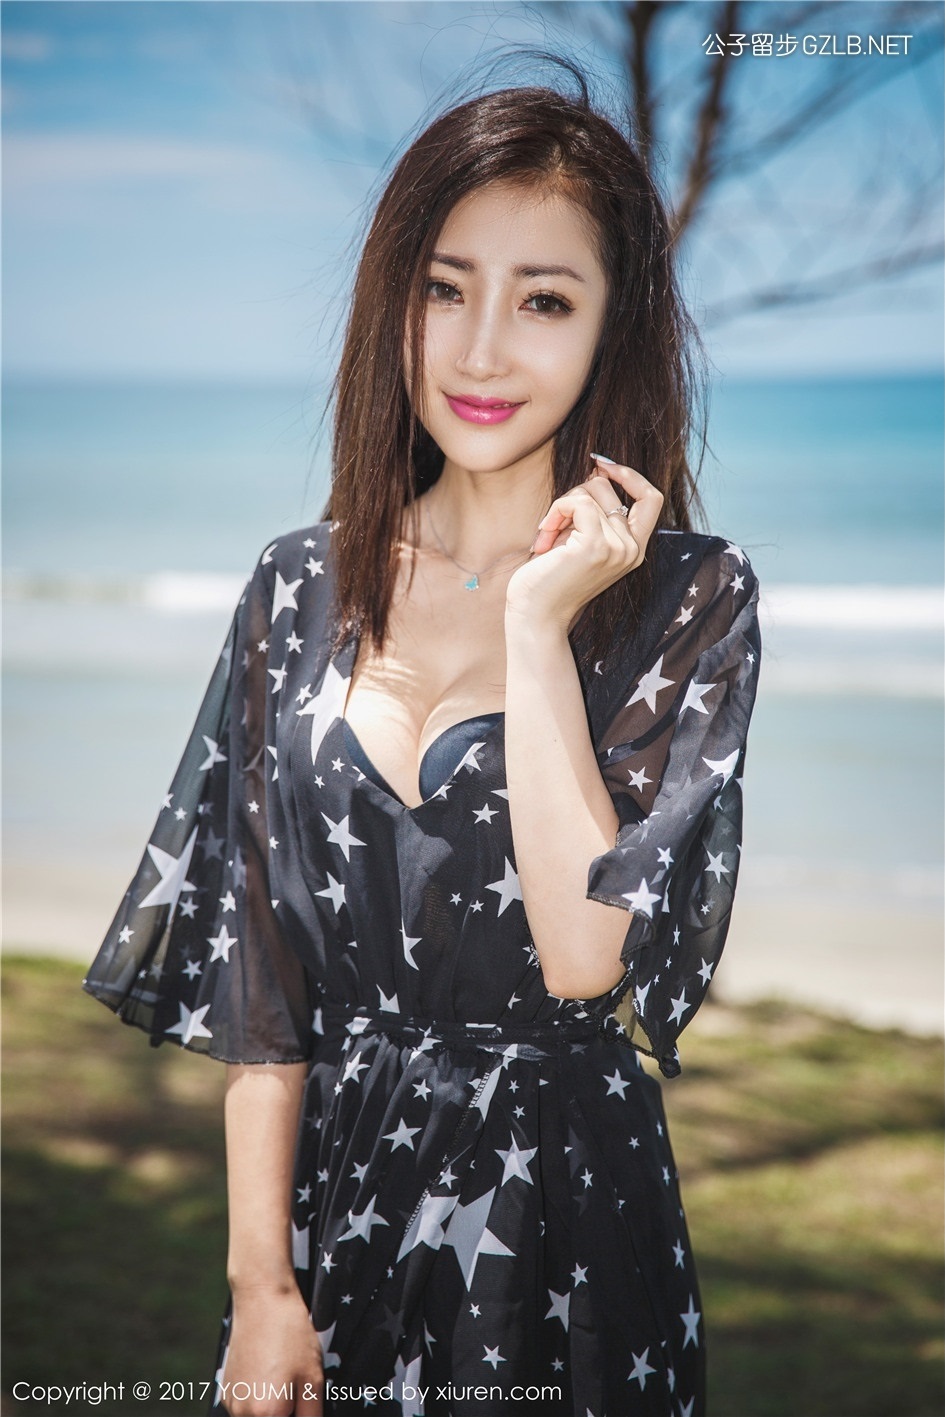 气质美女Yumi海边写真，黑色长裙提气质显优雅(第1张)